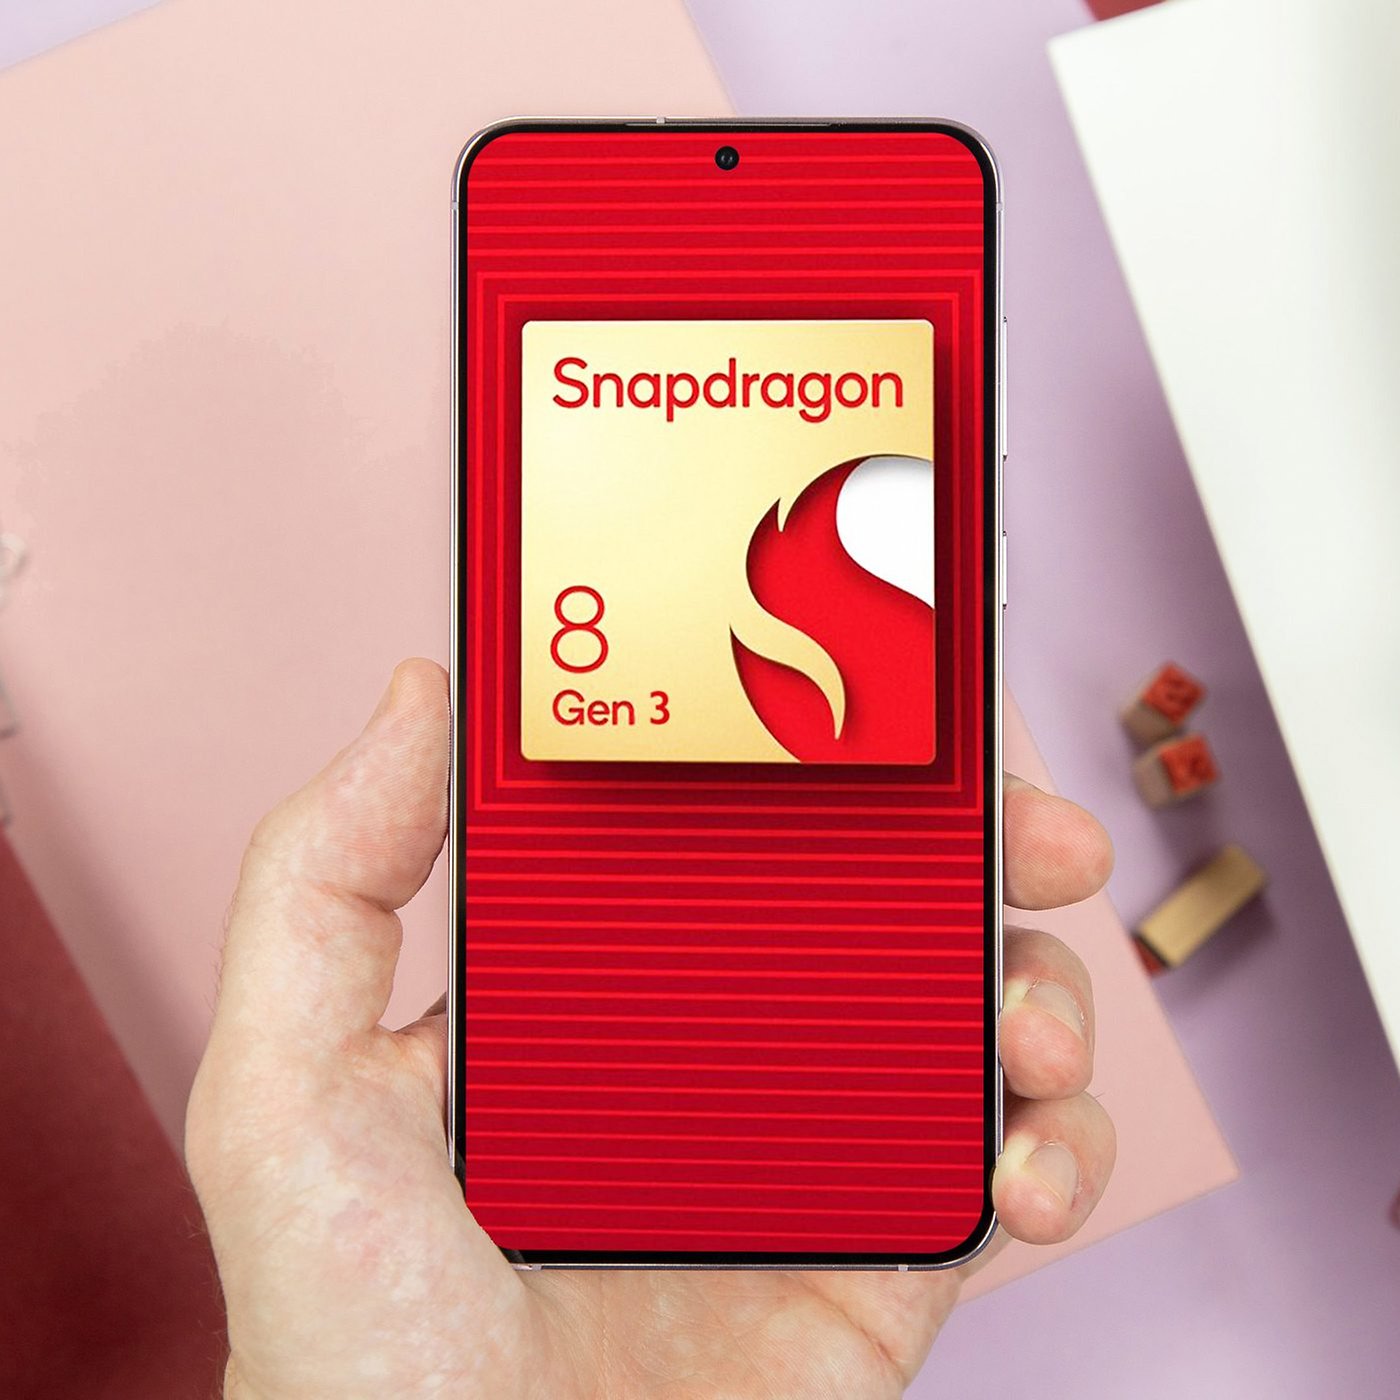 Snapdragon 8 Gen 3 phones